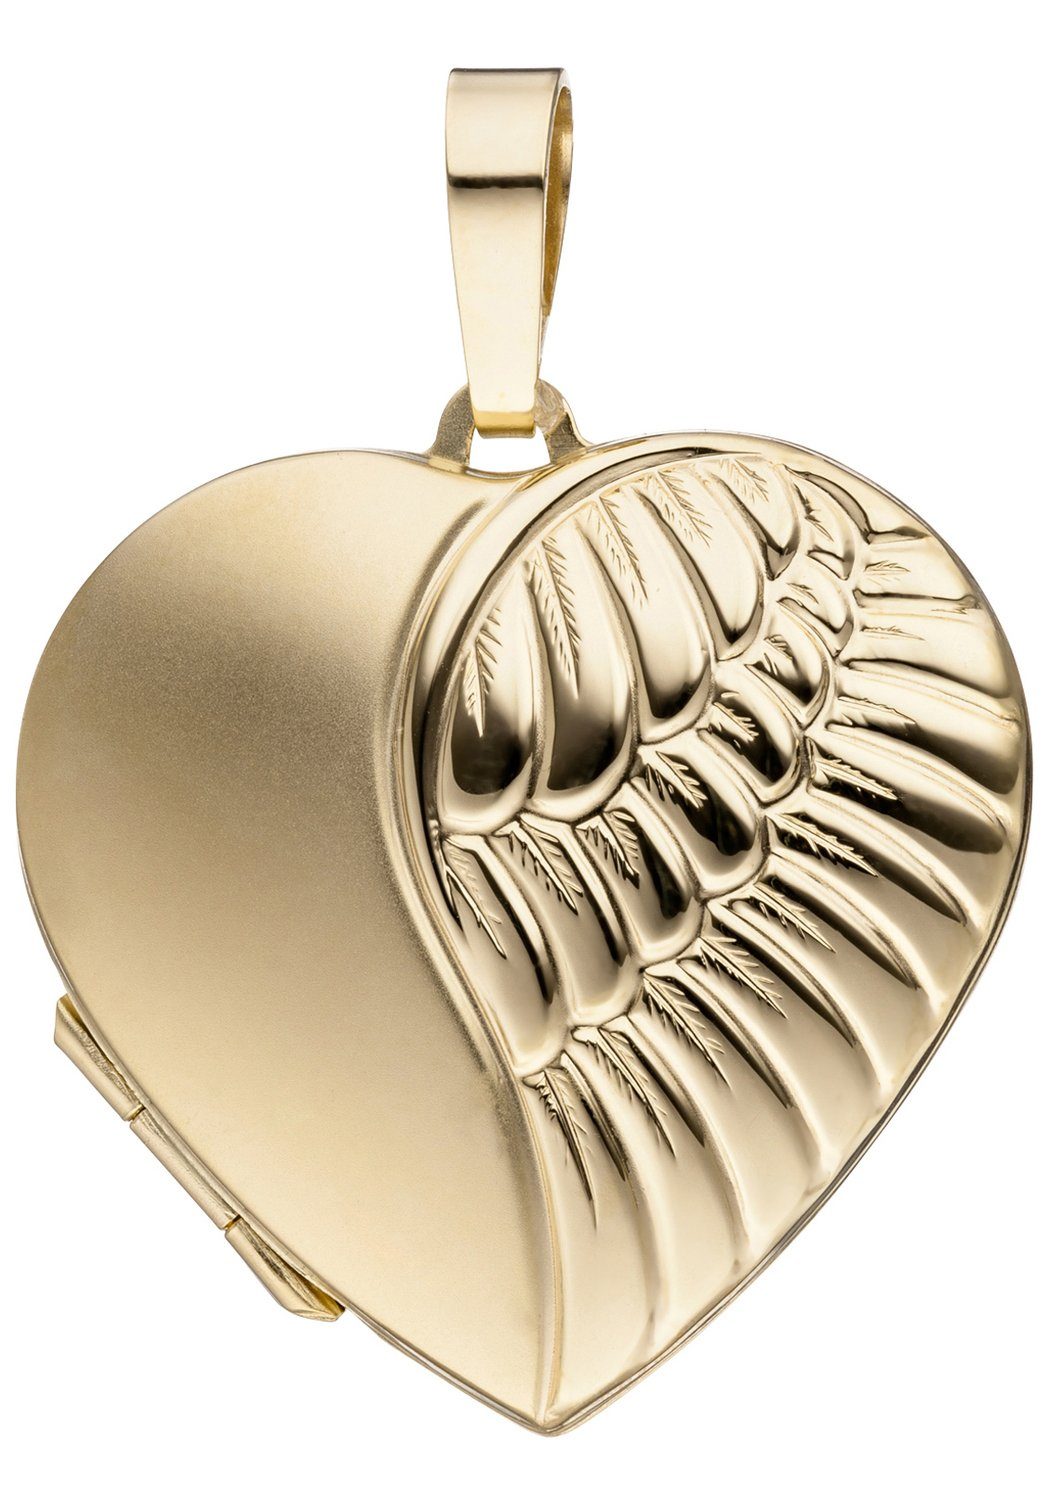 JOBO Medallionanhänger Anhänger Medaillon Herz, Breite ca. Tiefe mm, Höhe mm, 28,7 30,2 ca. Gold, mm ca. 6,7 333